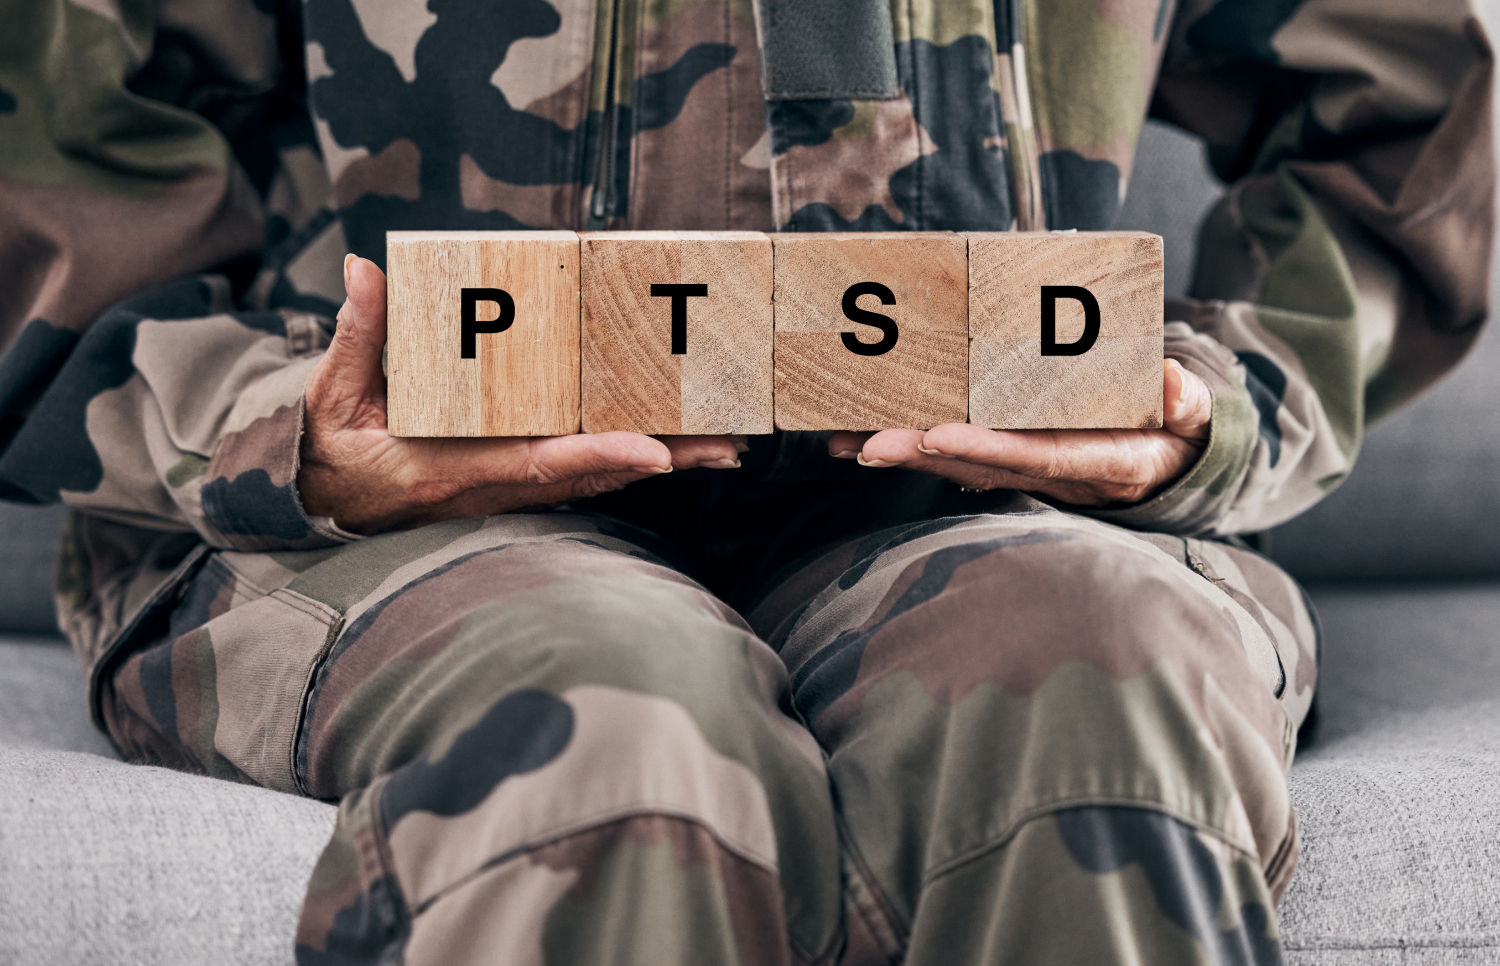 VA Caregiver Program for Veterans With PTSD